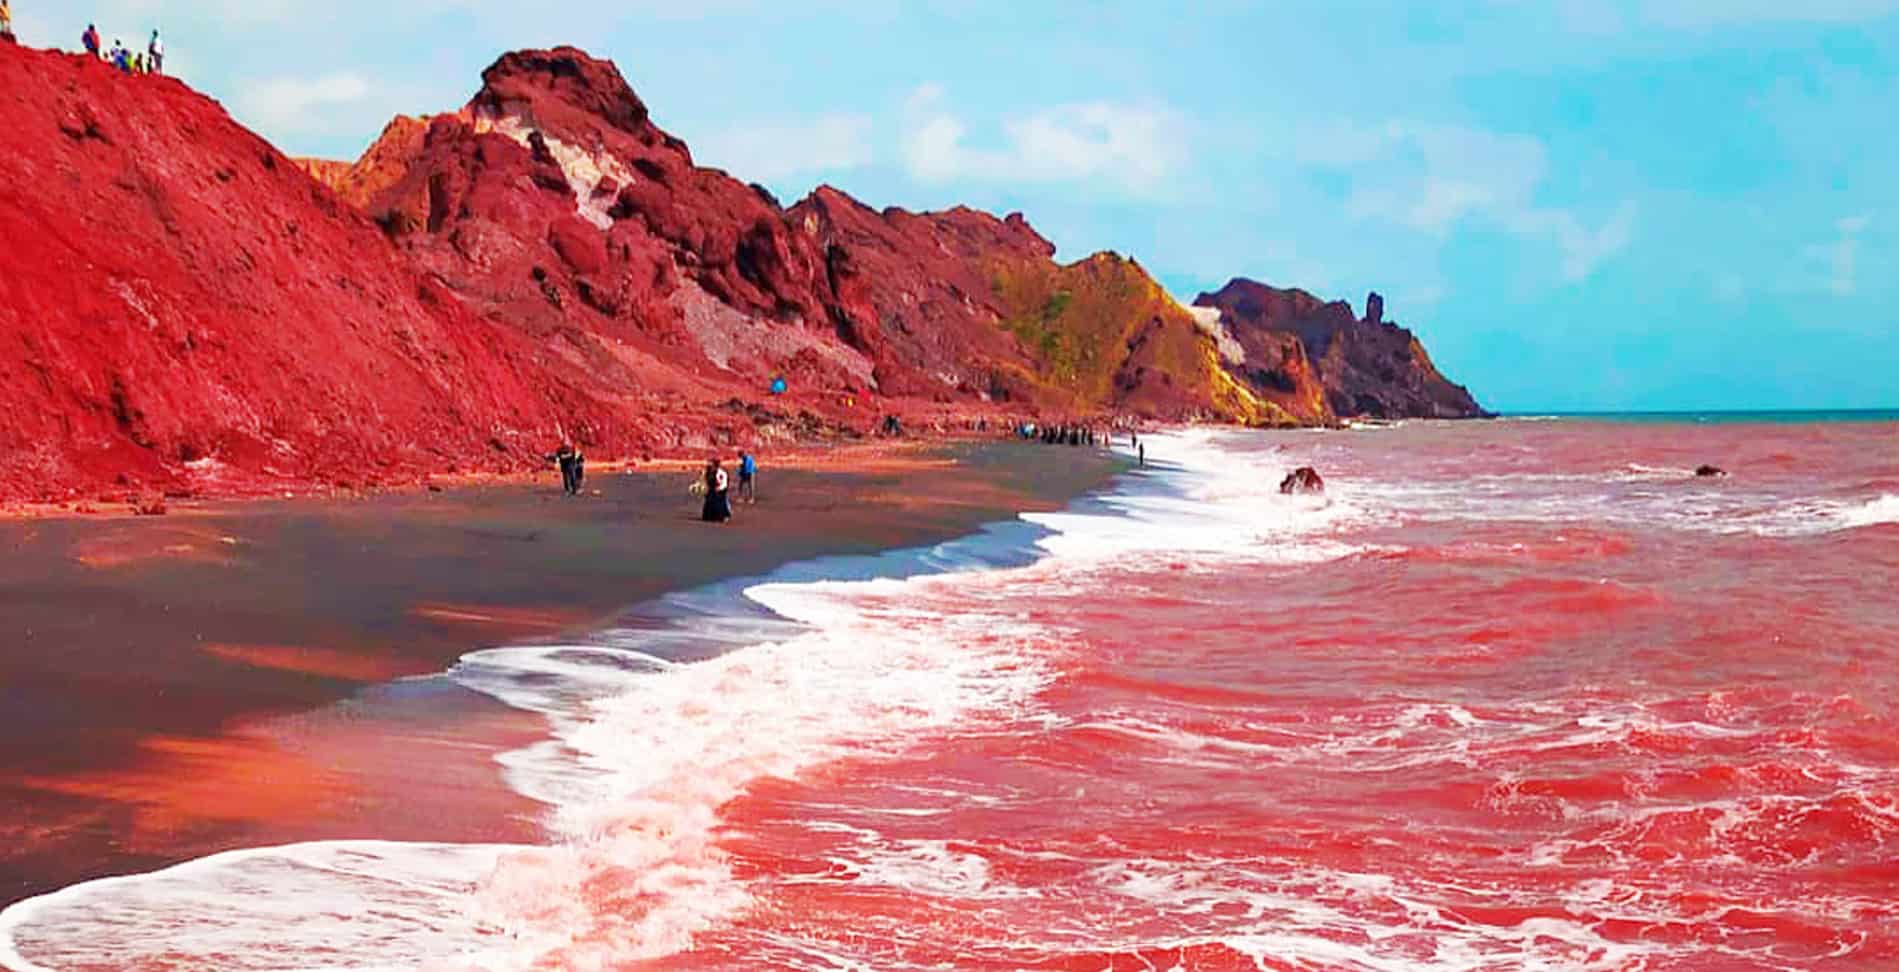 ساحل سرخ، یونان در تورهای خارجی